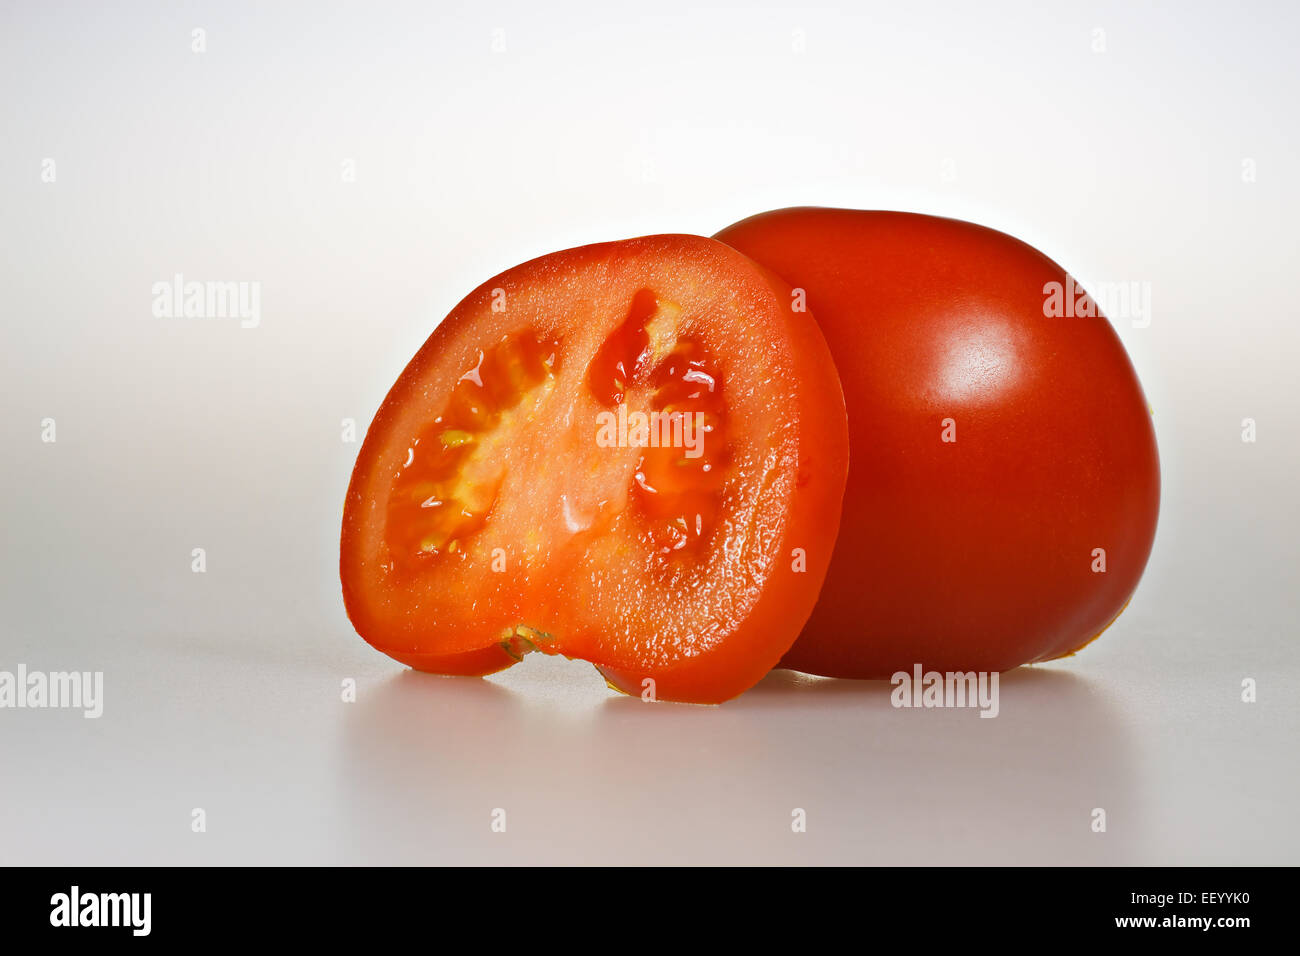 A tomato. Stock Photo